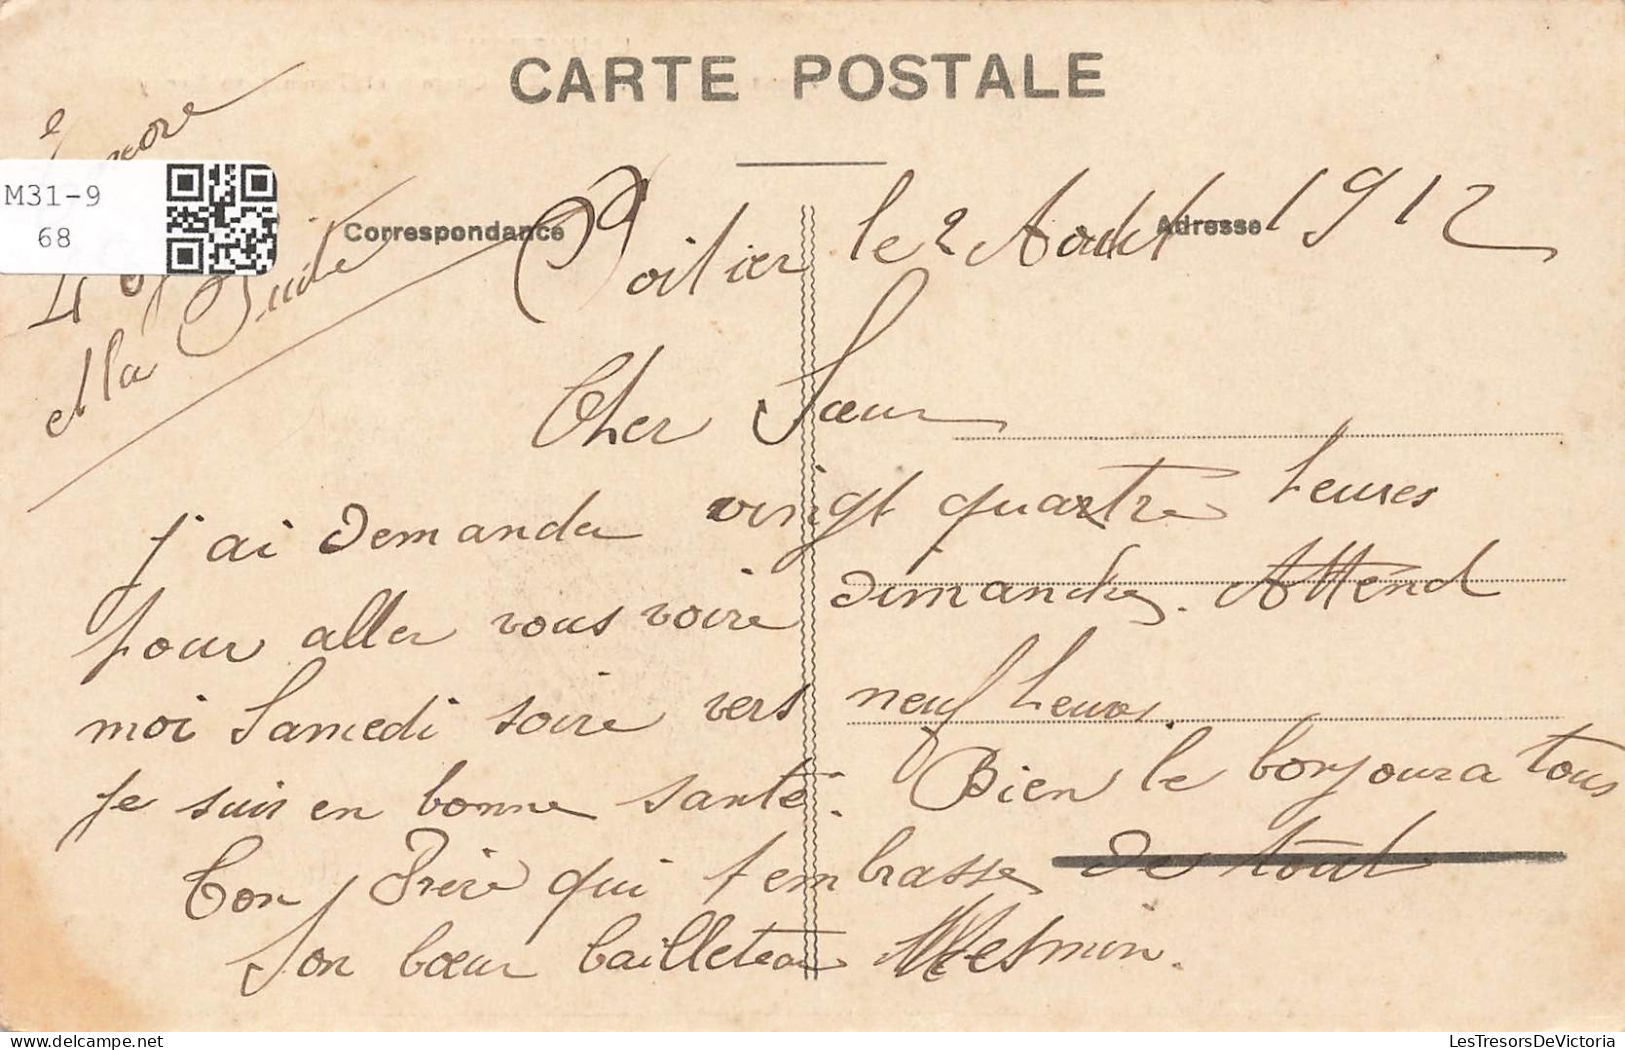 FRANCE - Environs Du Mont Dore - Chemin Et Sommet Du Sancy - Carte Postale Ancienne - Le Mont Dore